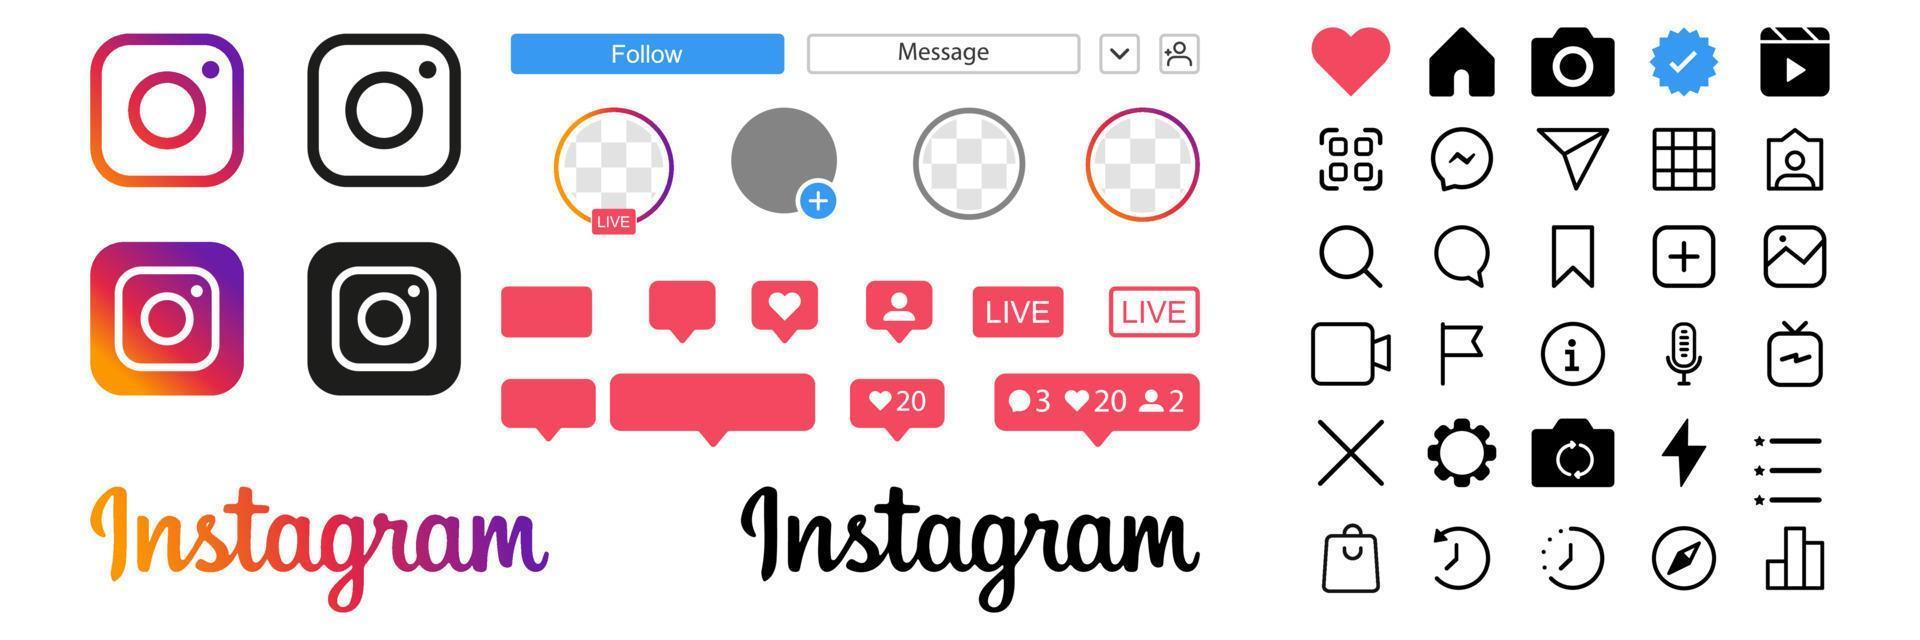 instagram-symbole setzen ui. Social-Media-Schnittstellensymbol-App. liken, kommentieren, folgen, live, igtv, shop, benachrichtigung. Vektor-Illustration vektor